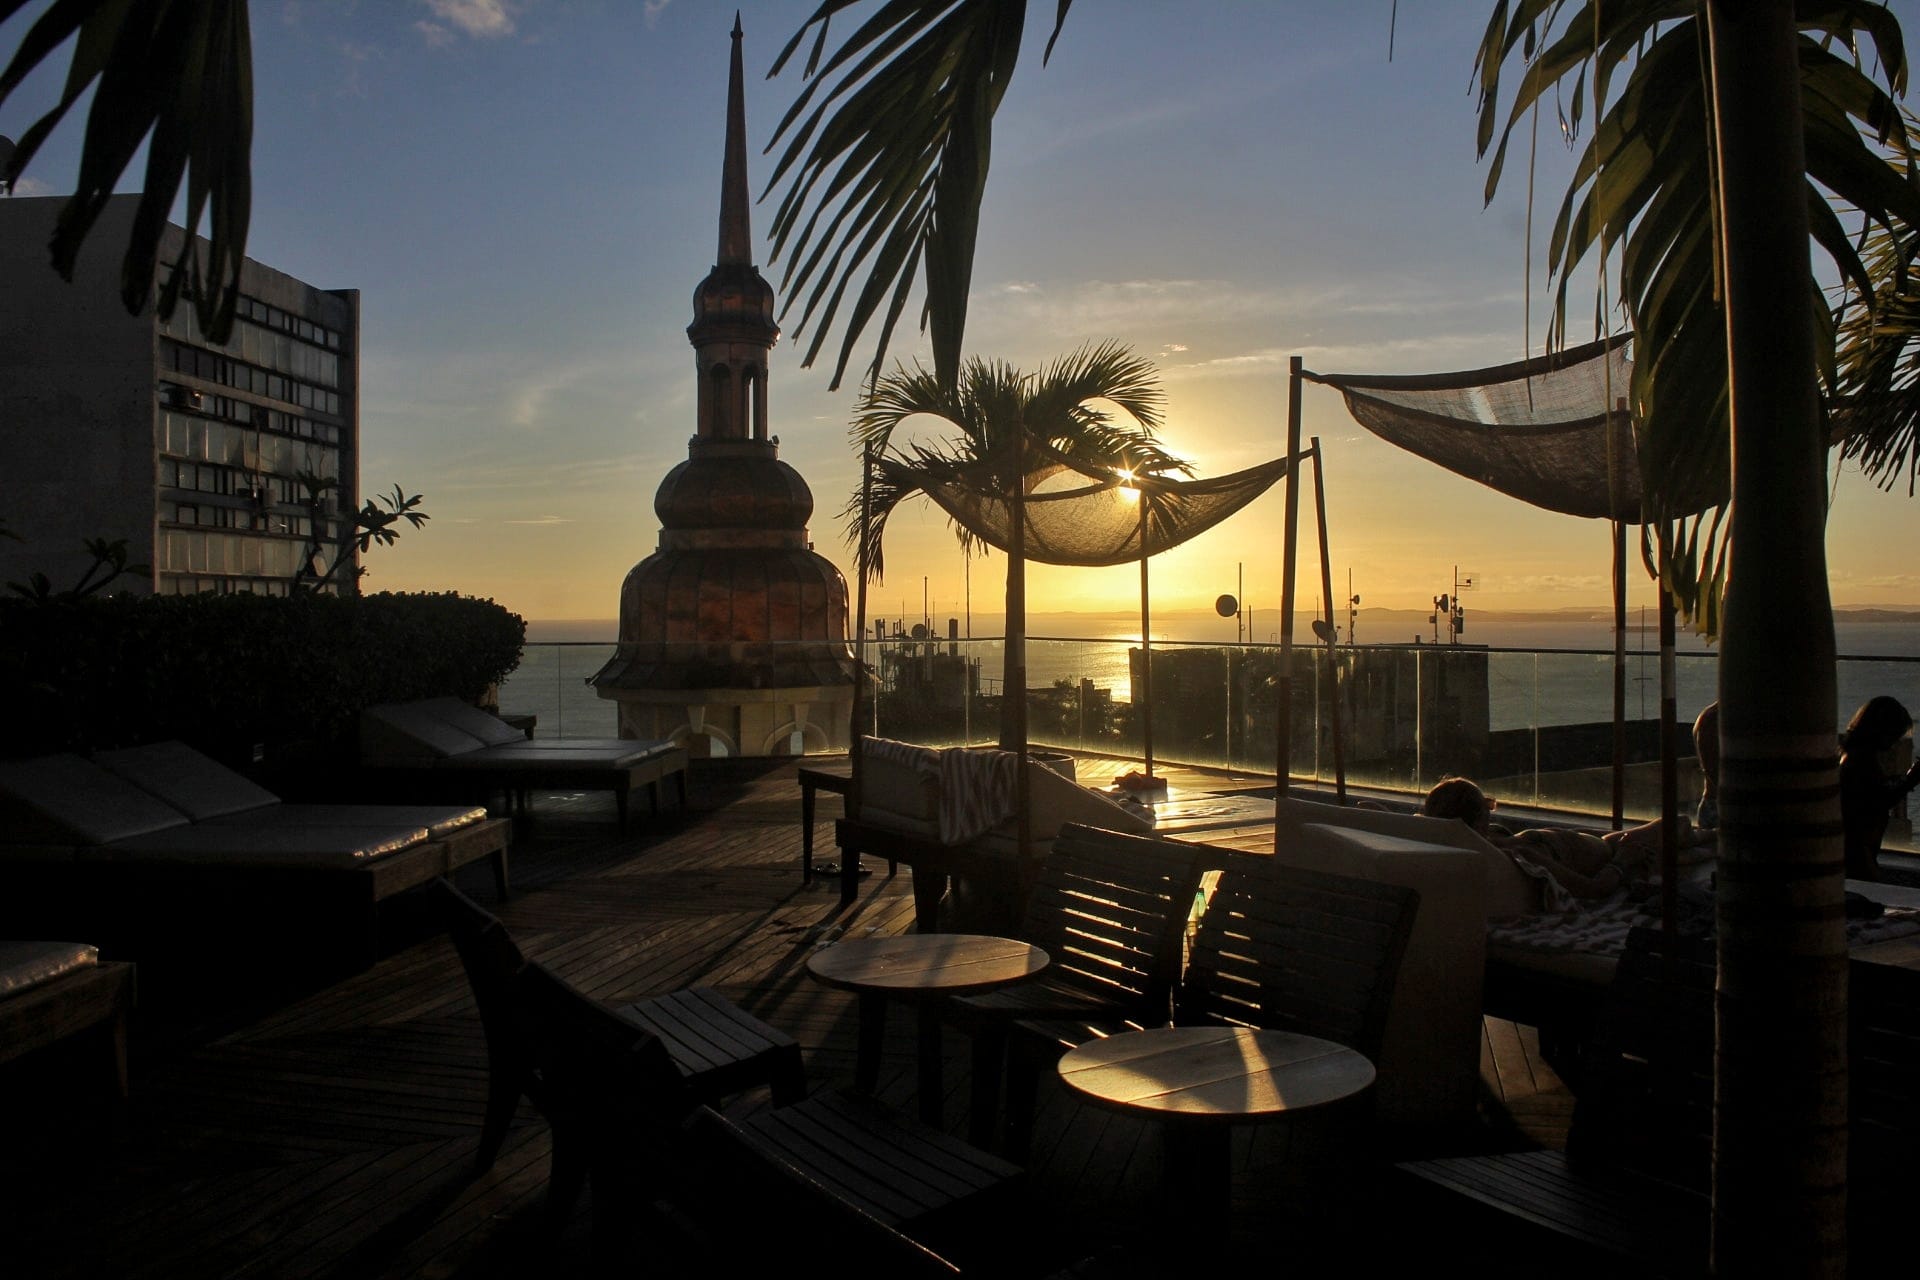 Hotel em Salvador: experiência Fera Palace - Repórter Gourmet